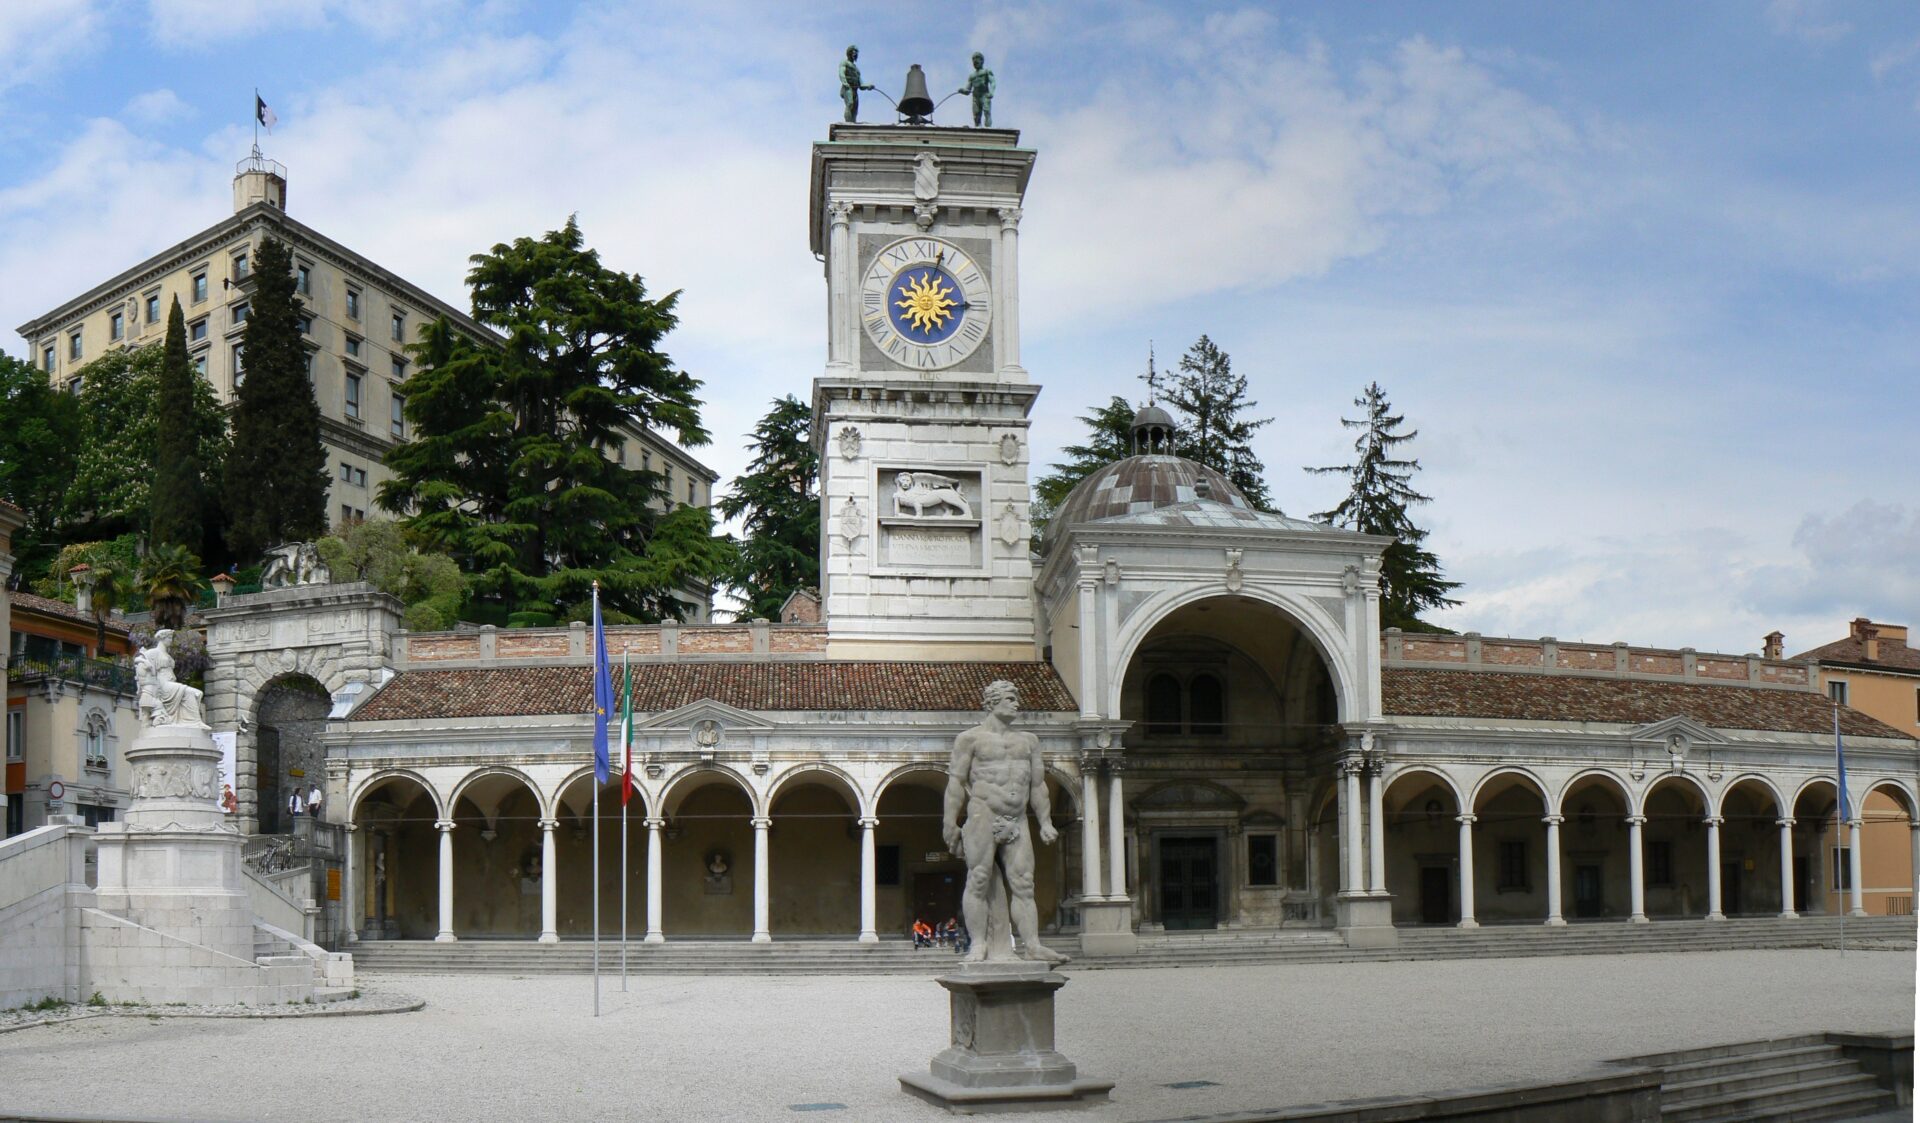 Piazza Della Liberta